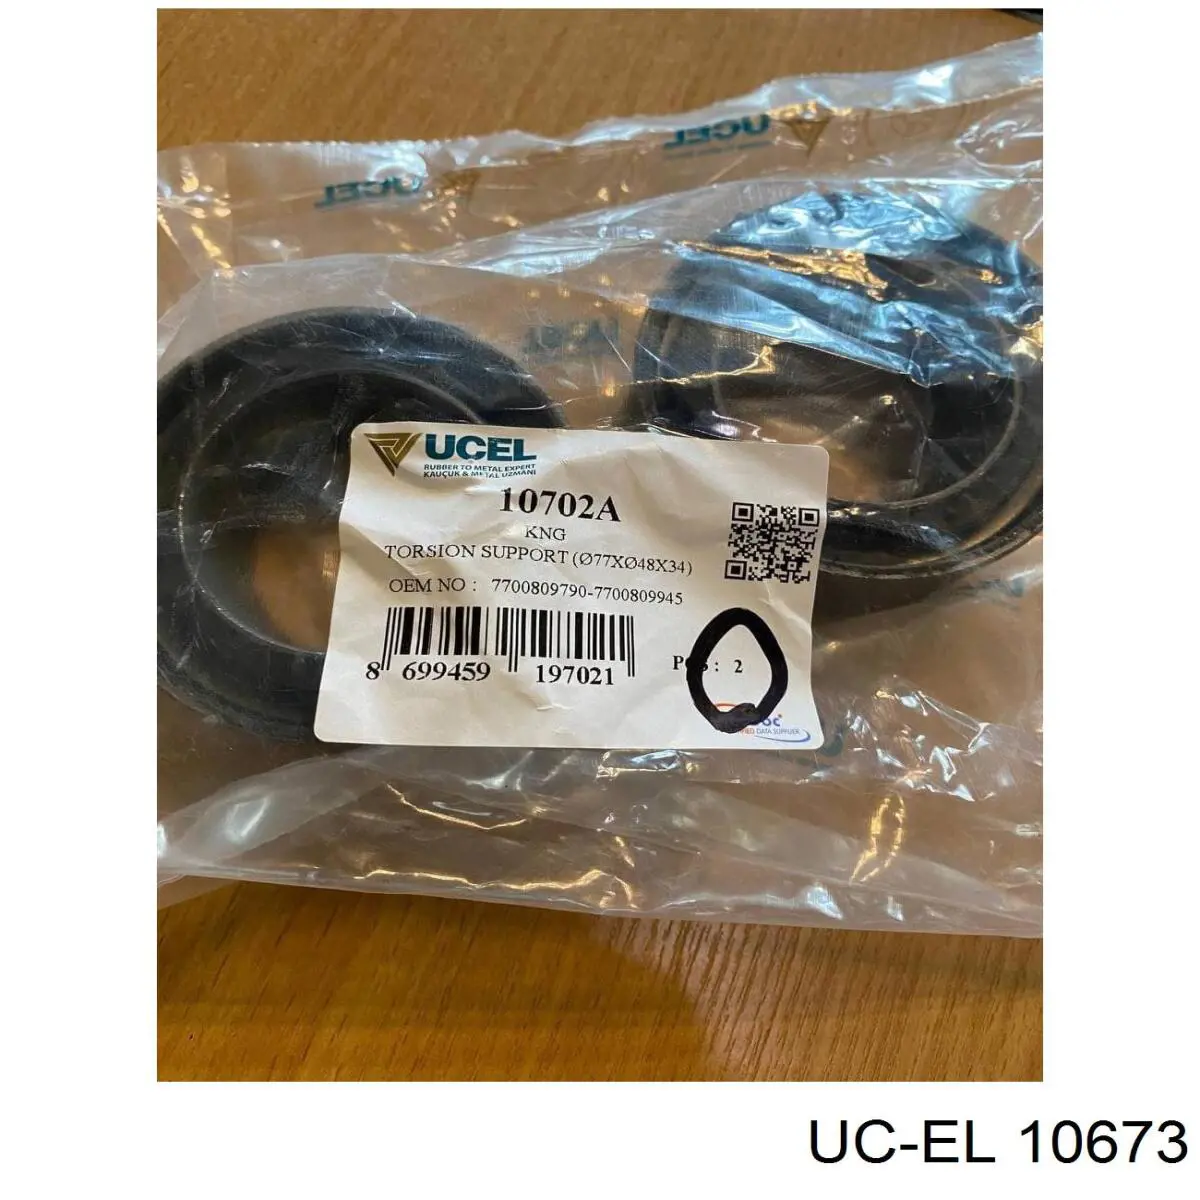 10673 Uc-el placa sobreposta de pedal do freio